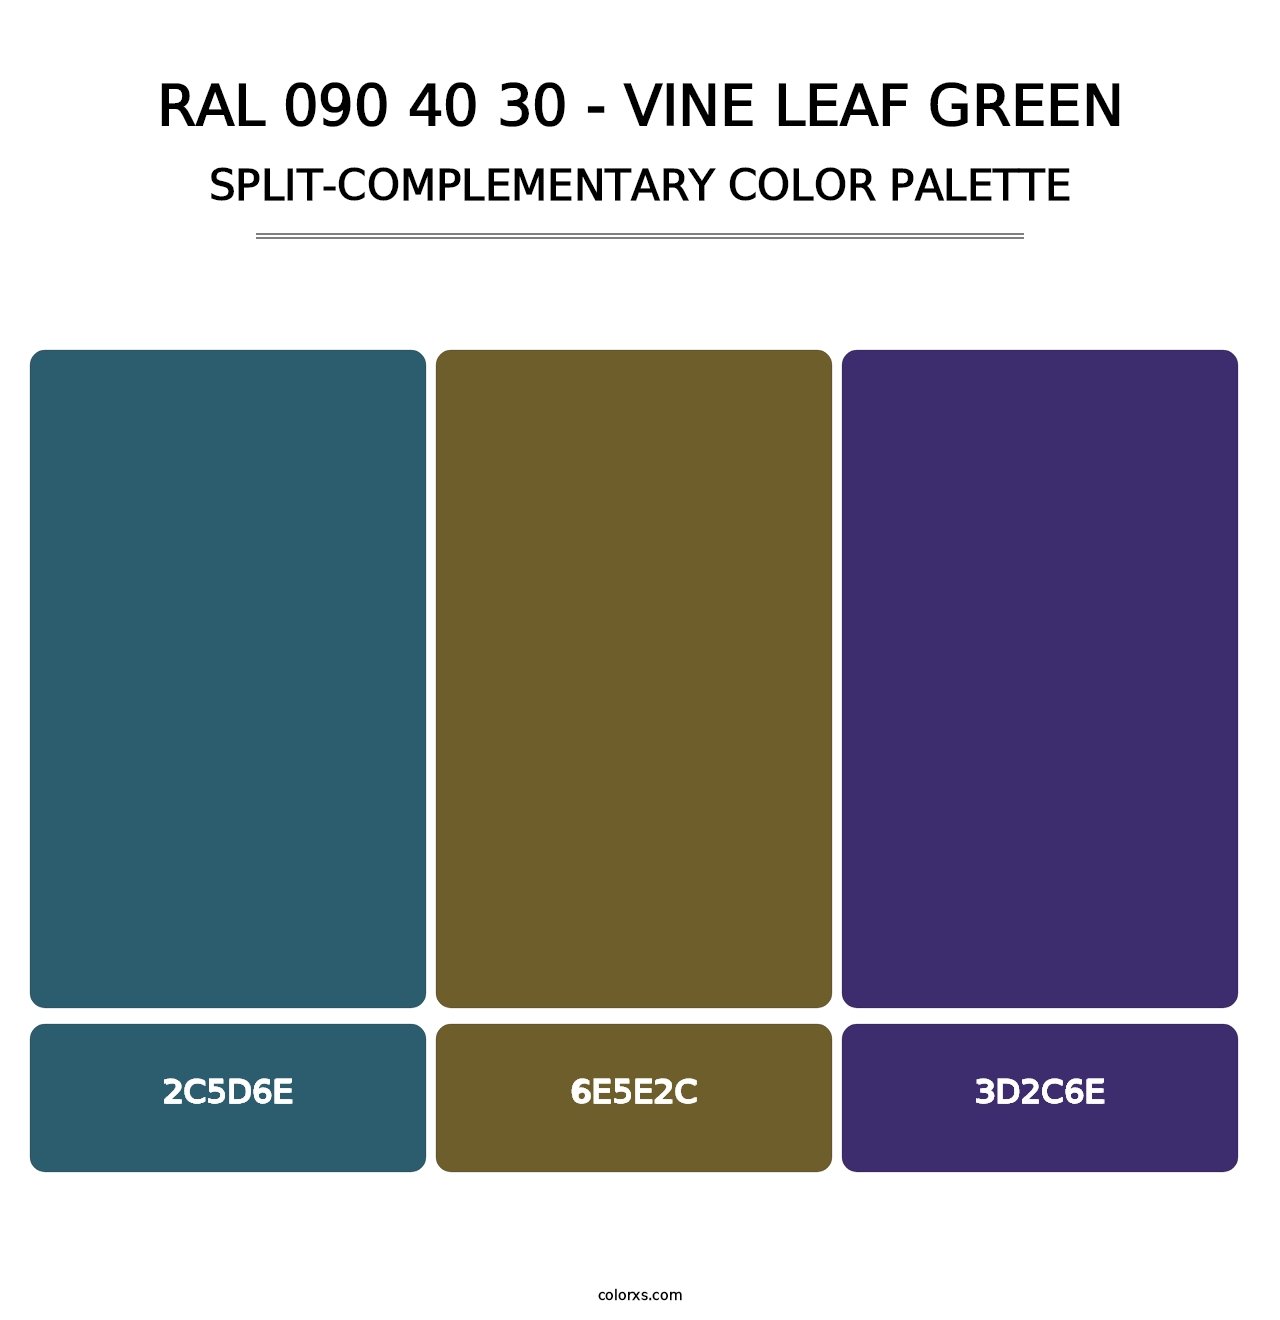 RAL 090 40 30 - Vine Leaf Green - Split-Complementary Color Palette